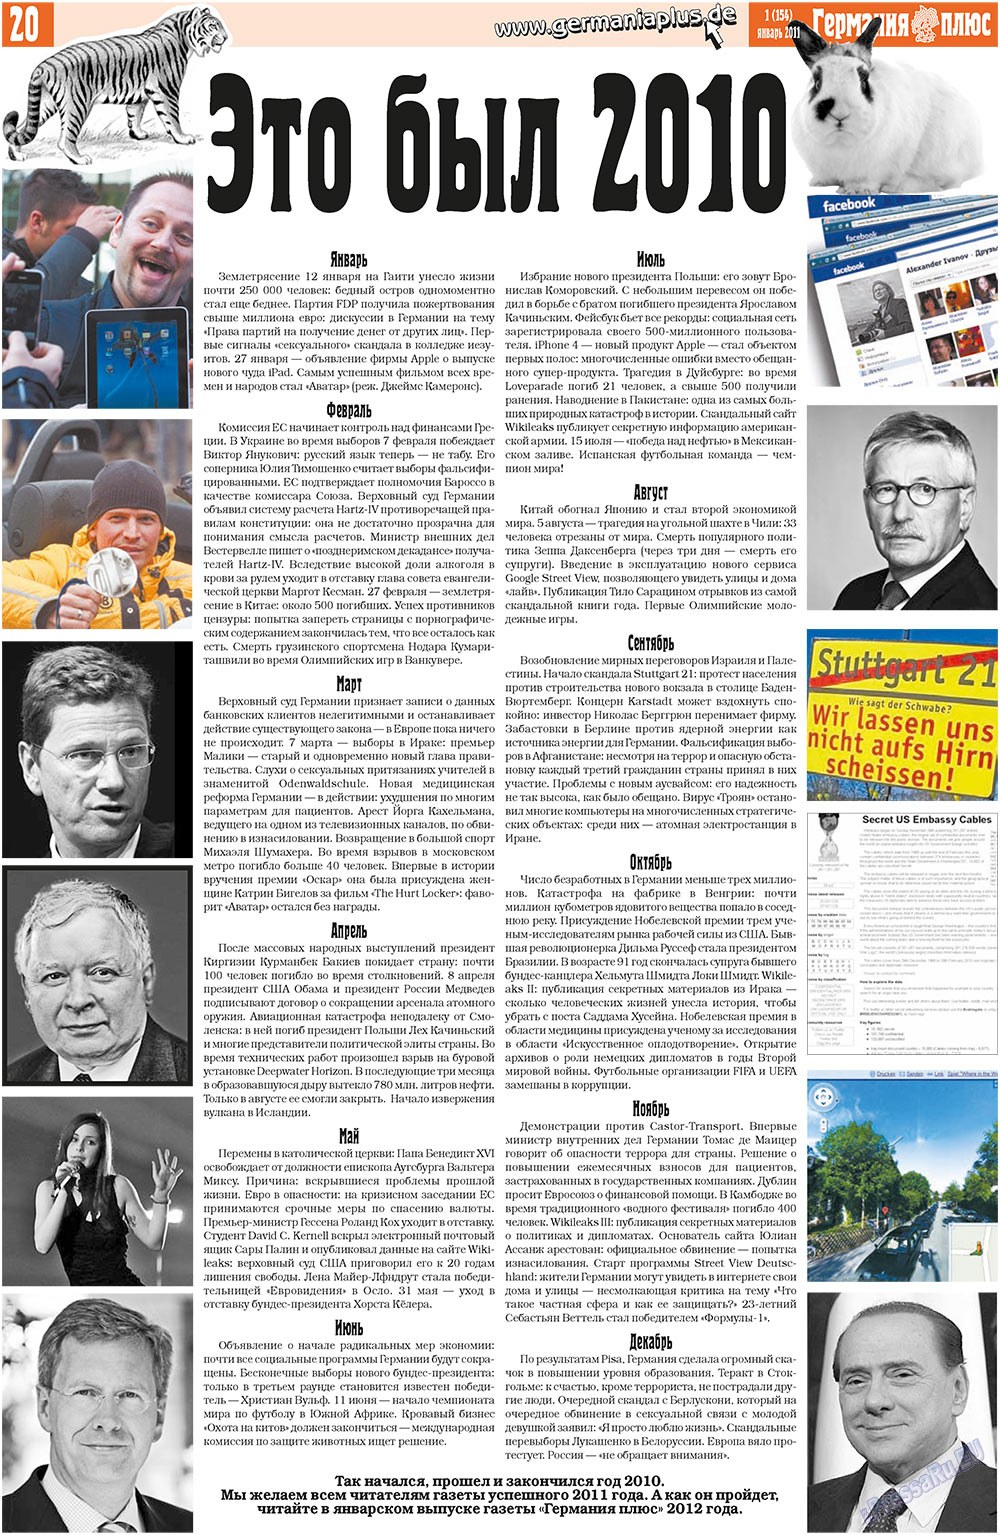 Германия плюс (газета). 2011 год, номер 1, стр. 20